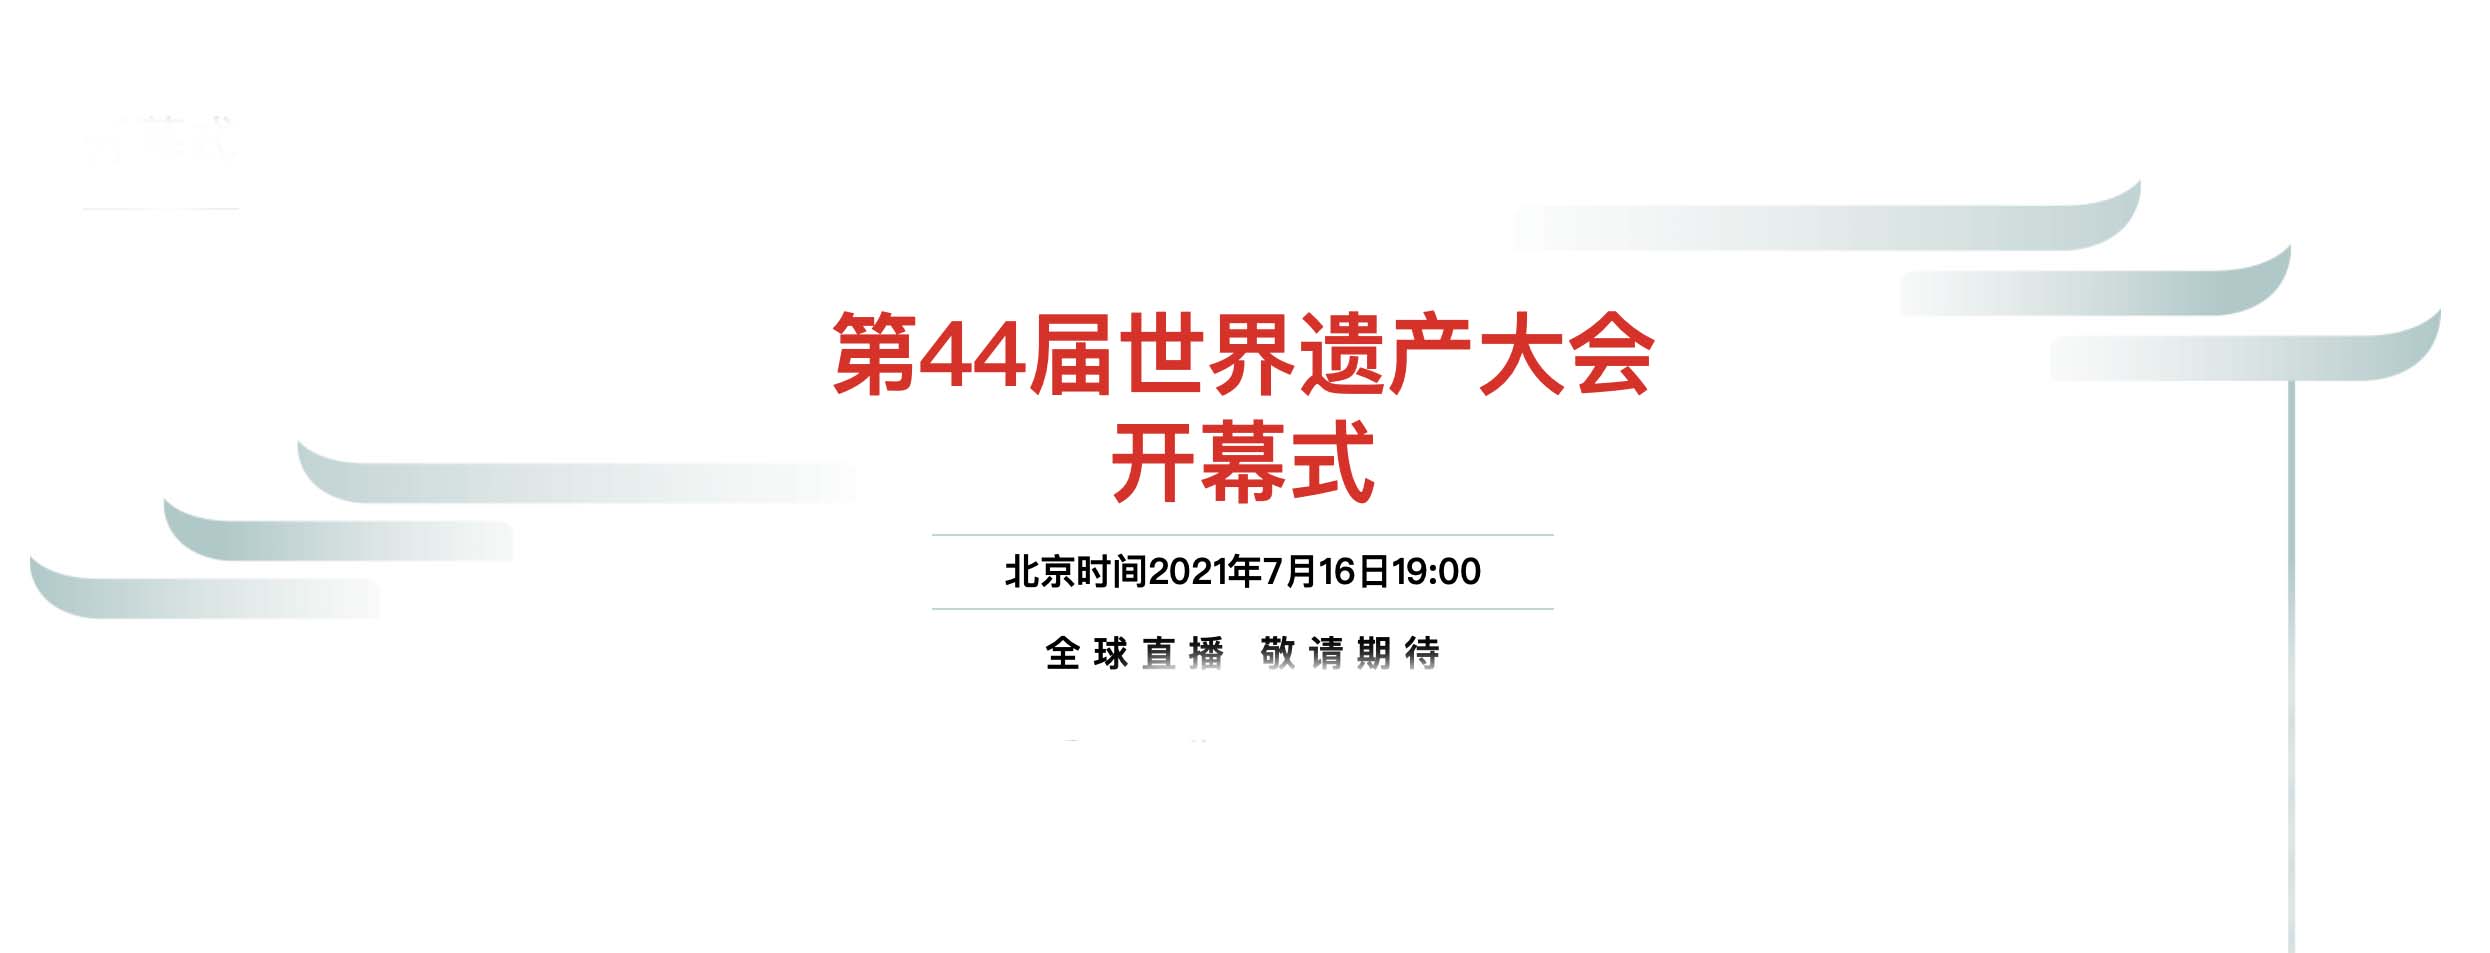 连续举办四届数字中国建设峰会 福州又将举办第44届世界遗产大会